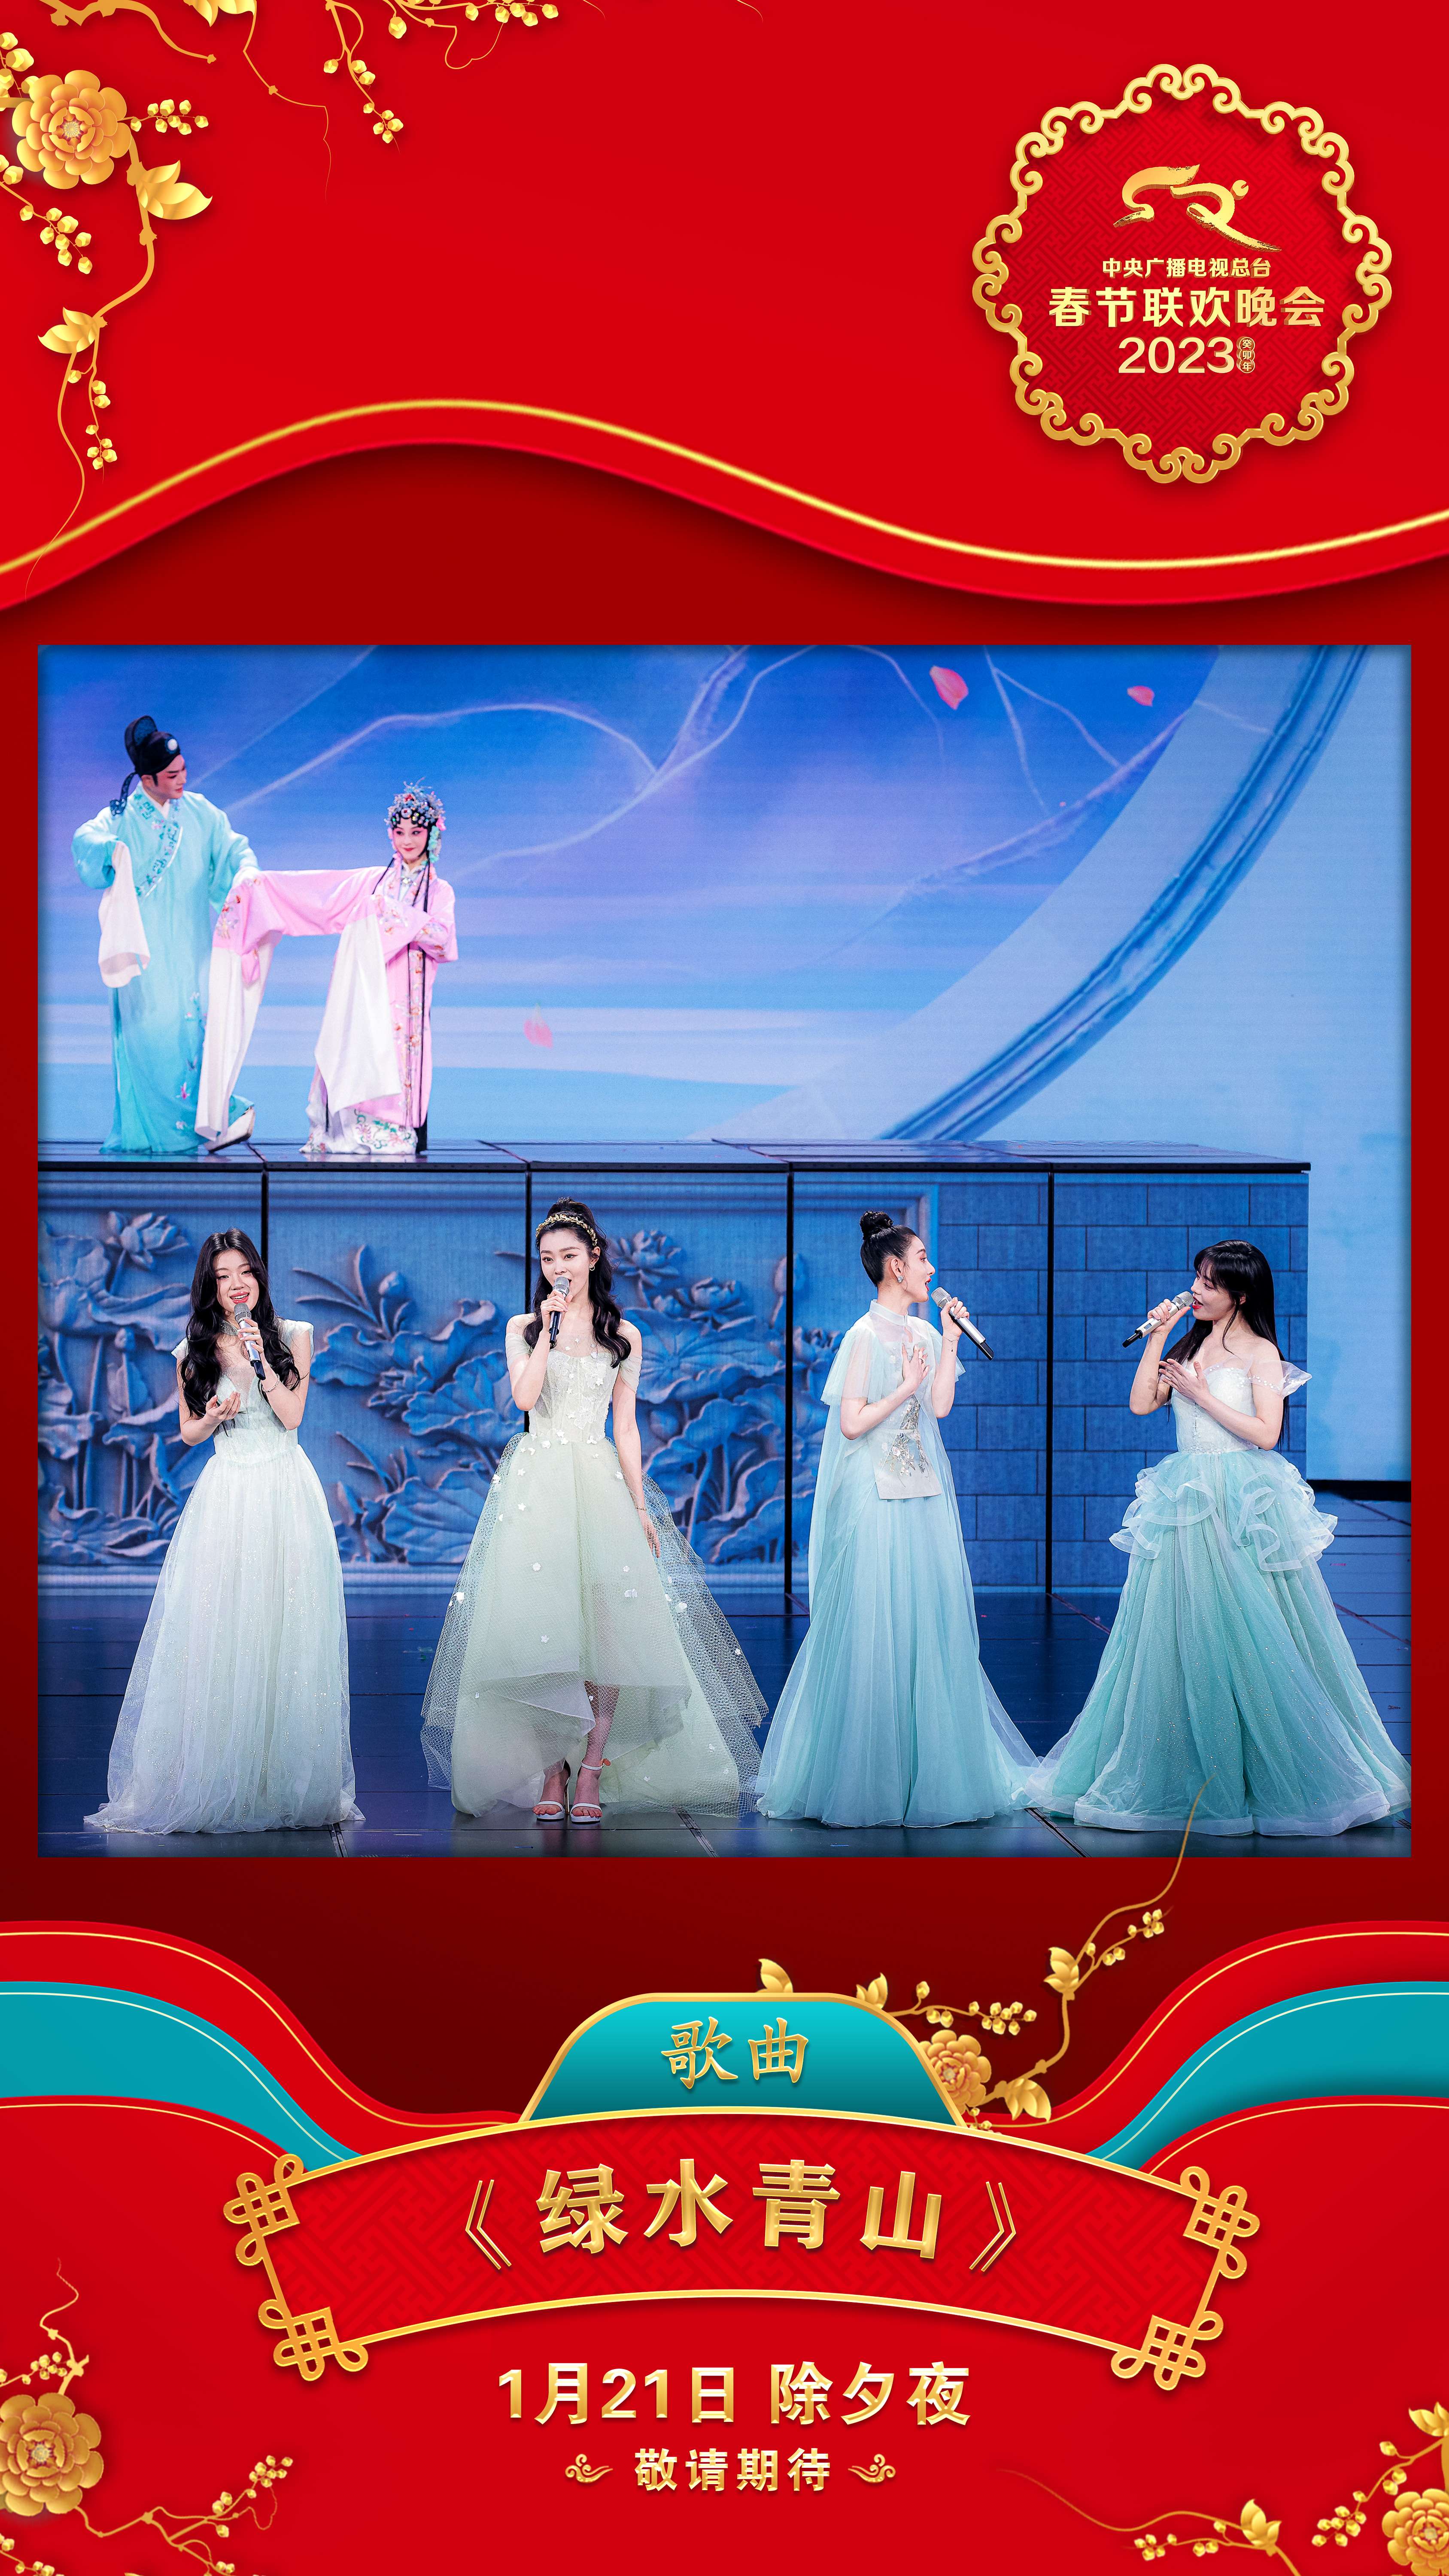 《2023年春节联欢晚会》第二组节目海报发布1.jpg